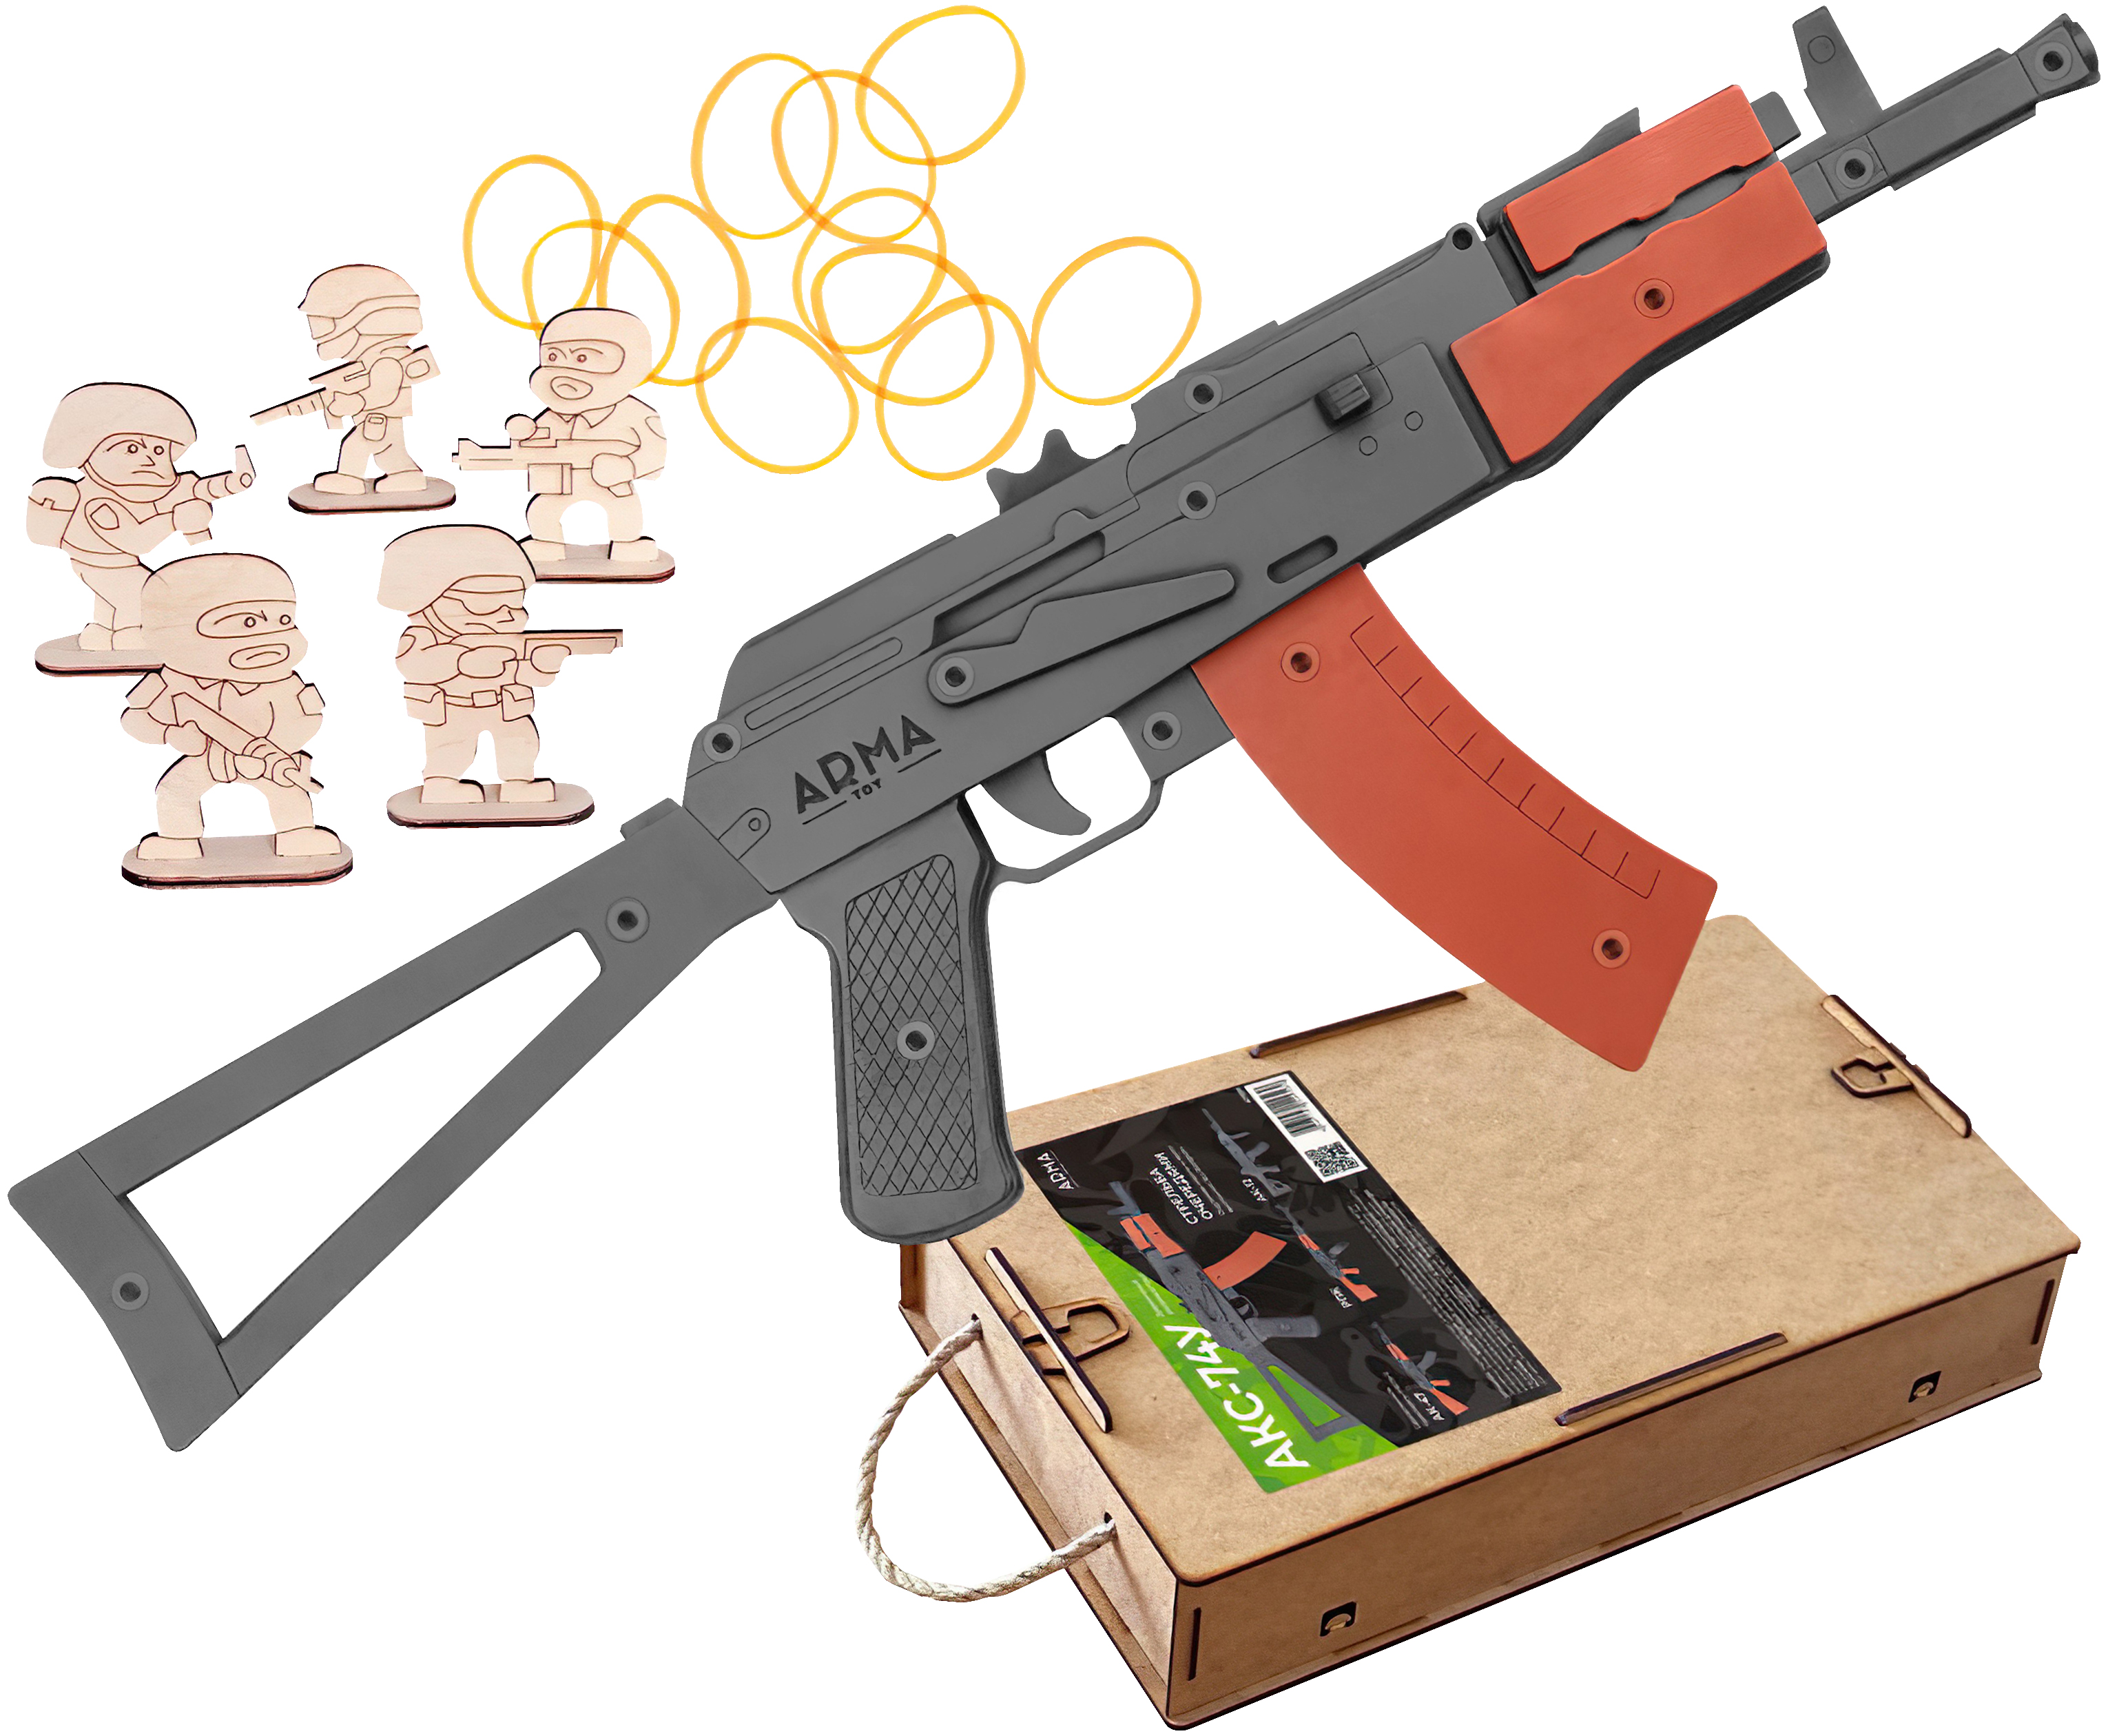 Резинкострел игрушечный Arma toys автомат АКС-74У макет, Калашников, AT036 резинкострел arma toys автомат ак 47 макет окрашенный калашников at006k